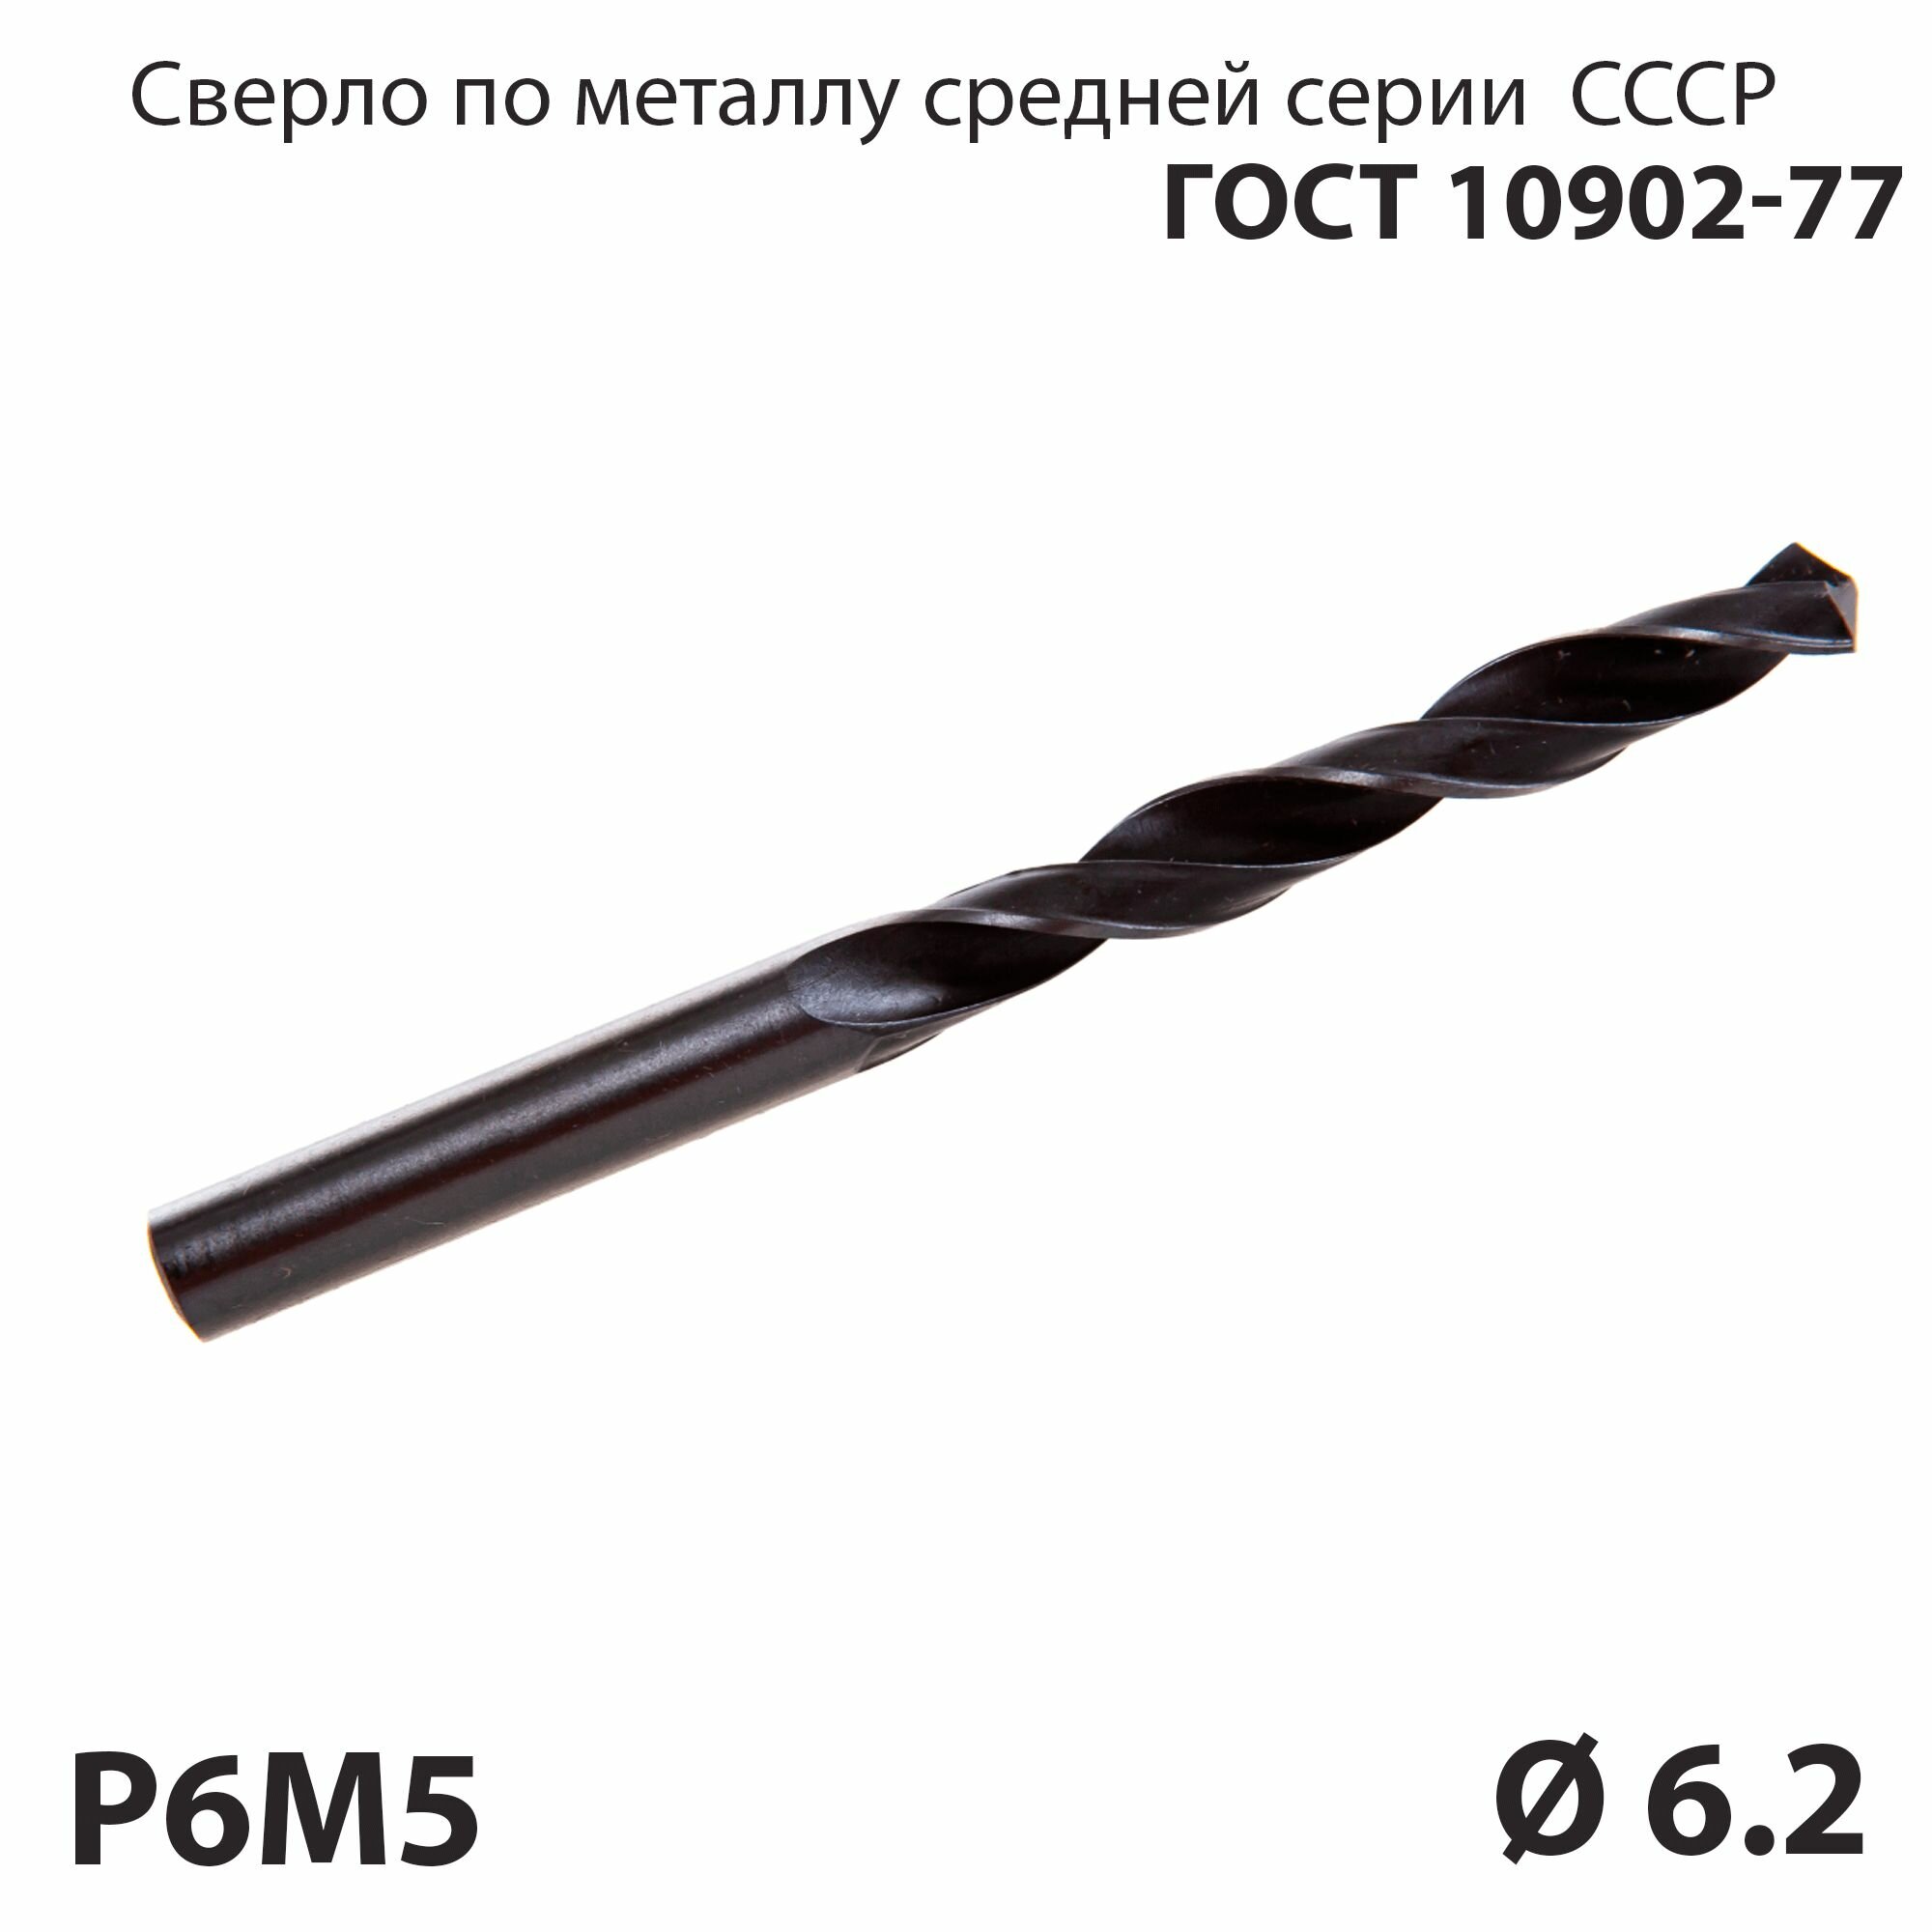 Сверло по металлу 62 мм средней серии P6М5 СССР ГОСТ 10902-77 (спиральное правое ц/х)